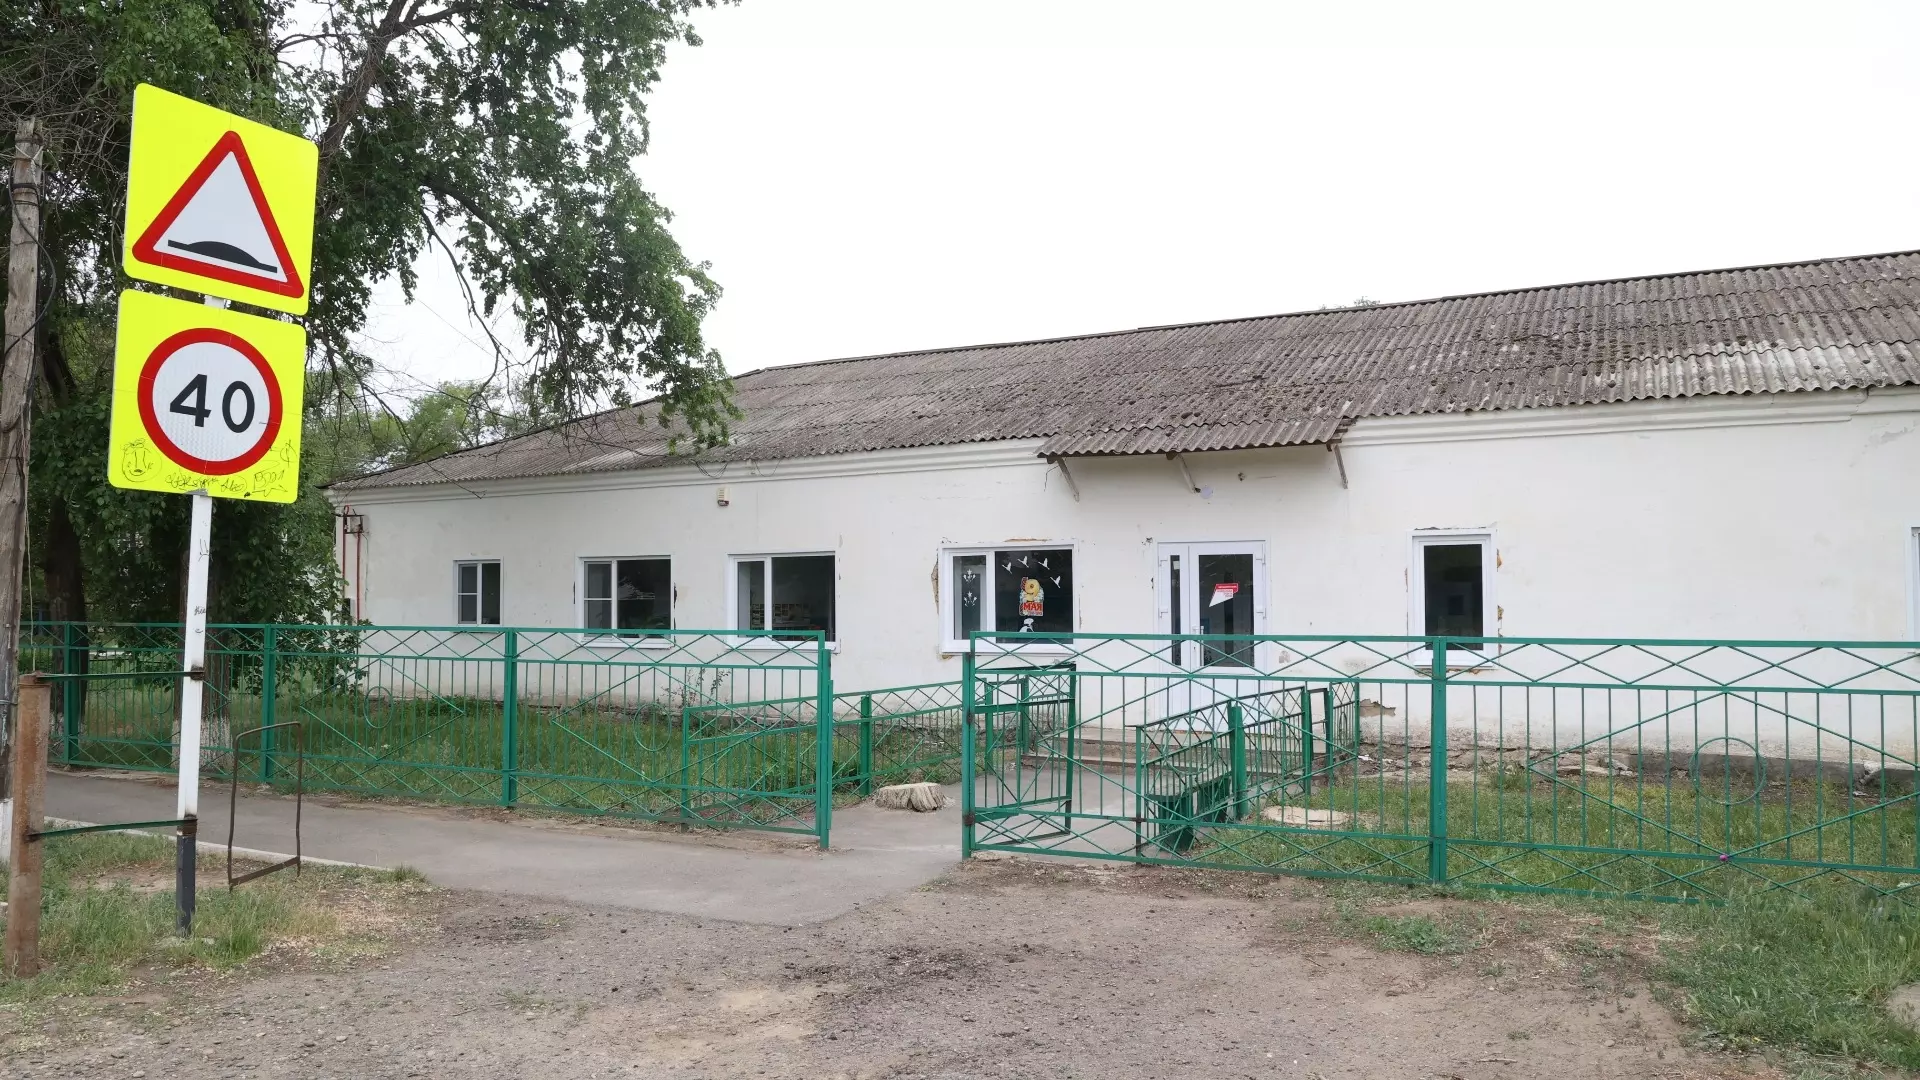 Николай Великдань проверил амбулаторию в Ипатовском округе после капитального ремонта0